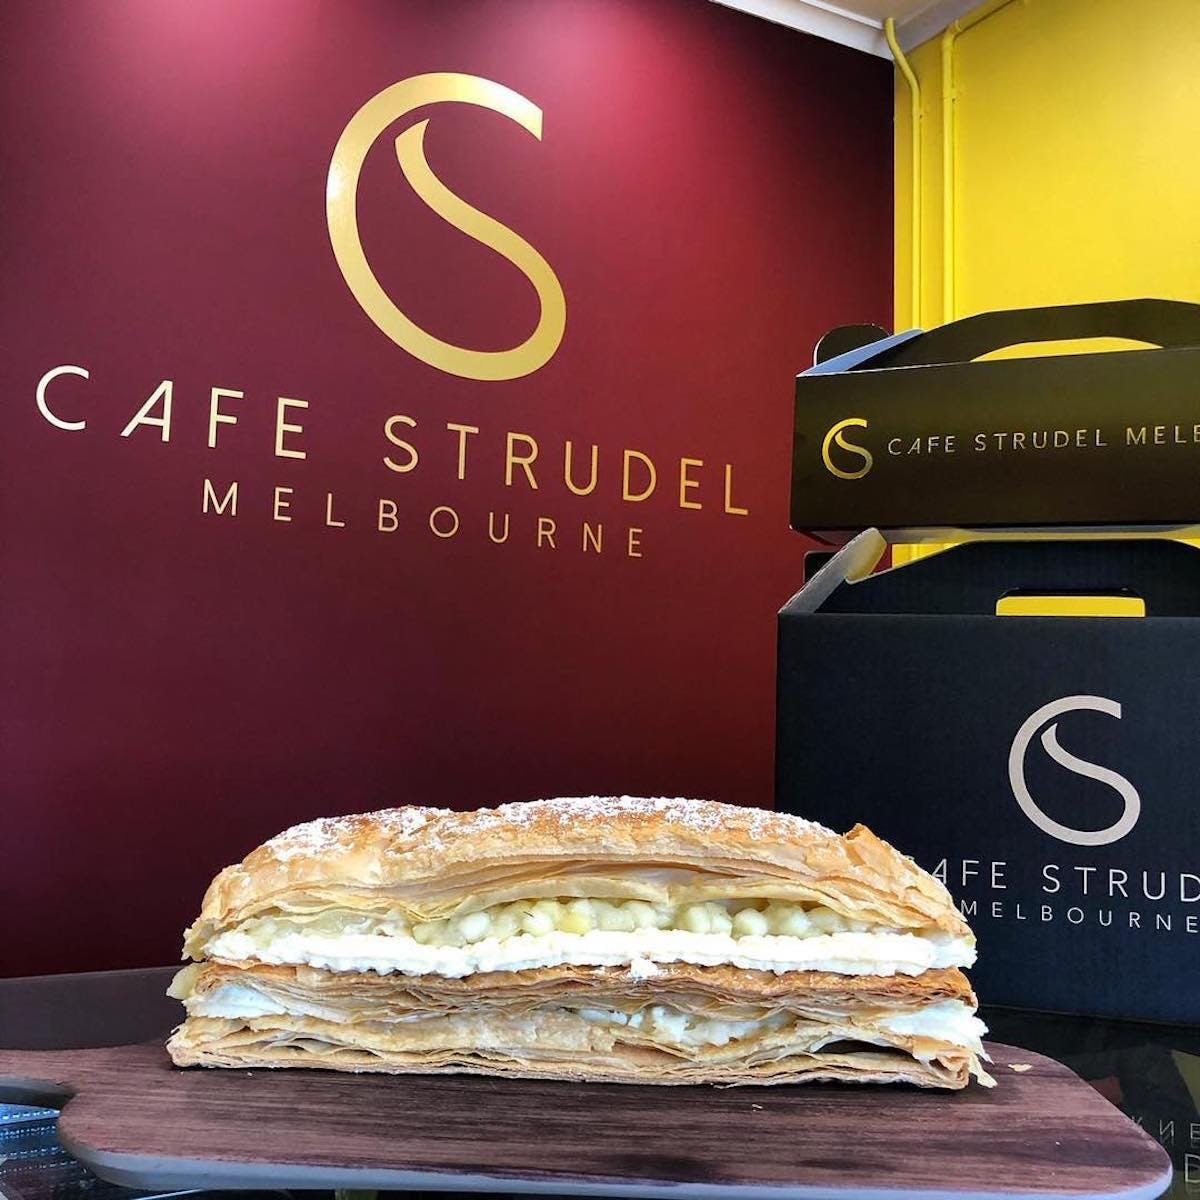 Cafe Strudel Melbourne - Food Delivery Shop